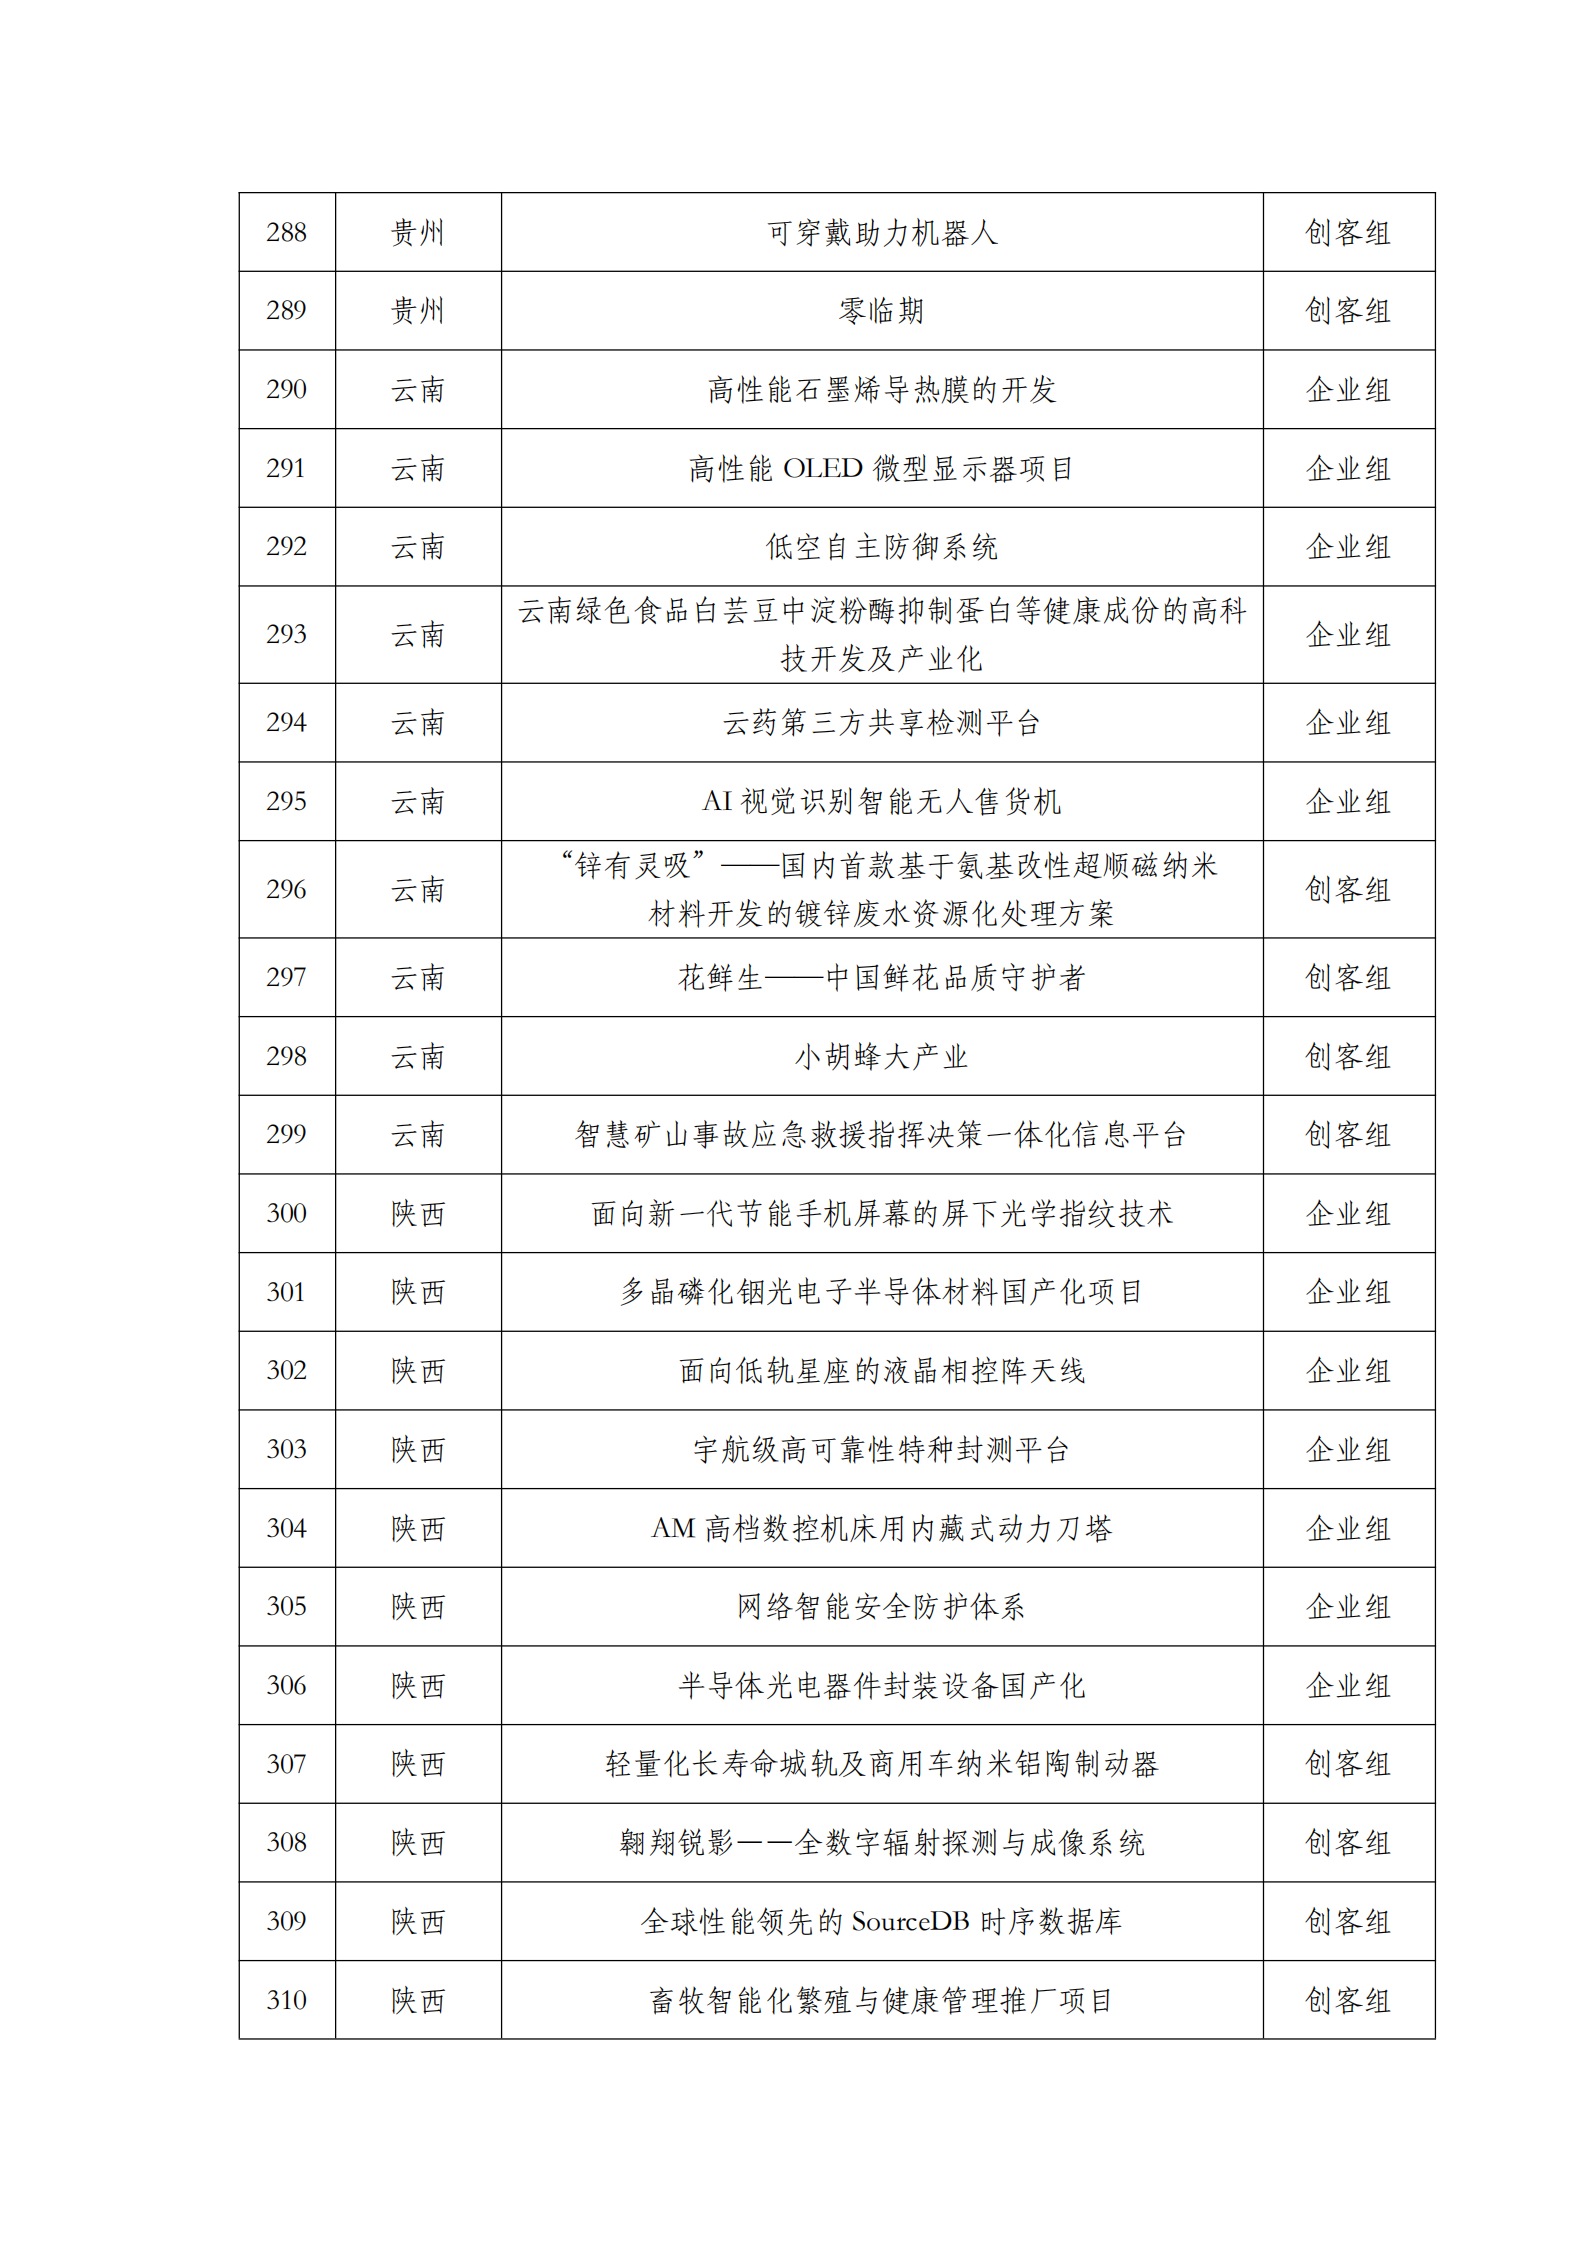 第六届“创客中国”中小企业创新创业大赛500强公示名单_13.png